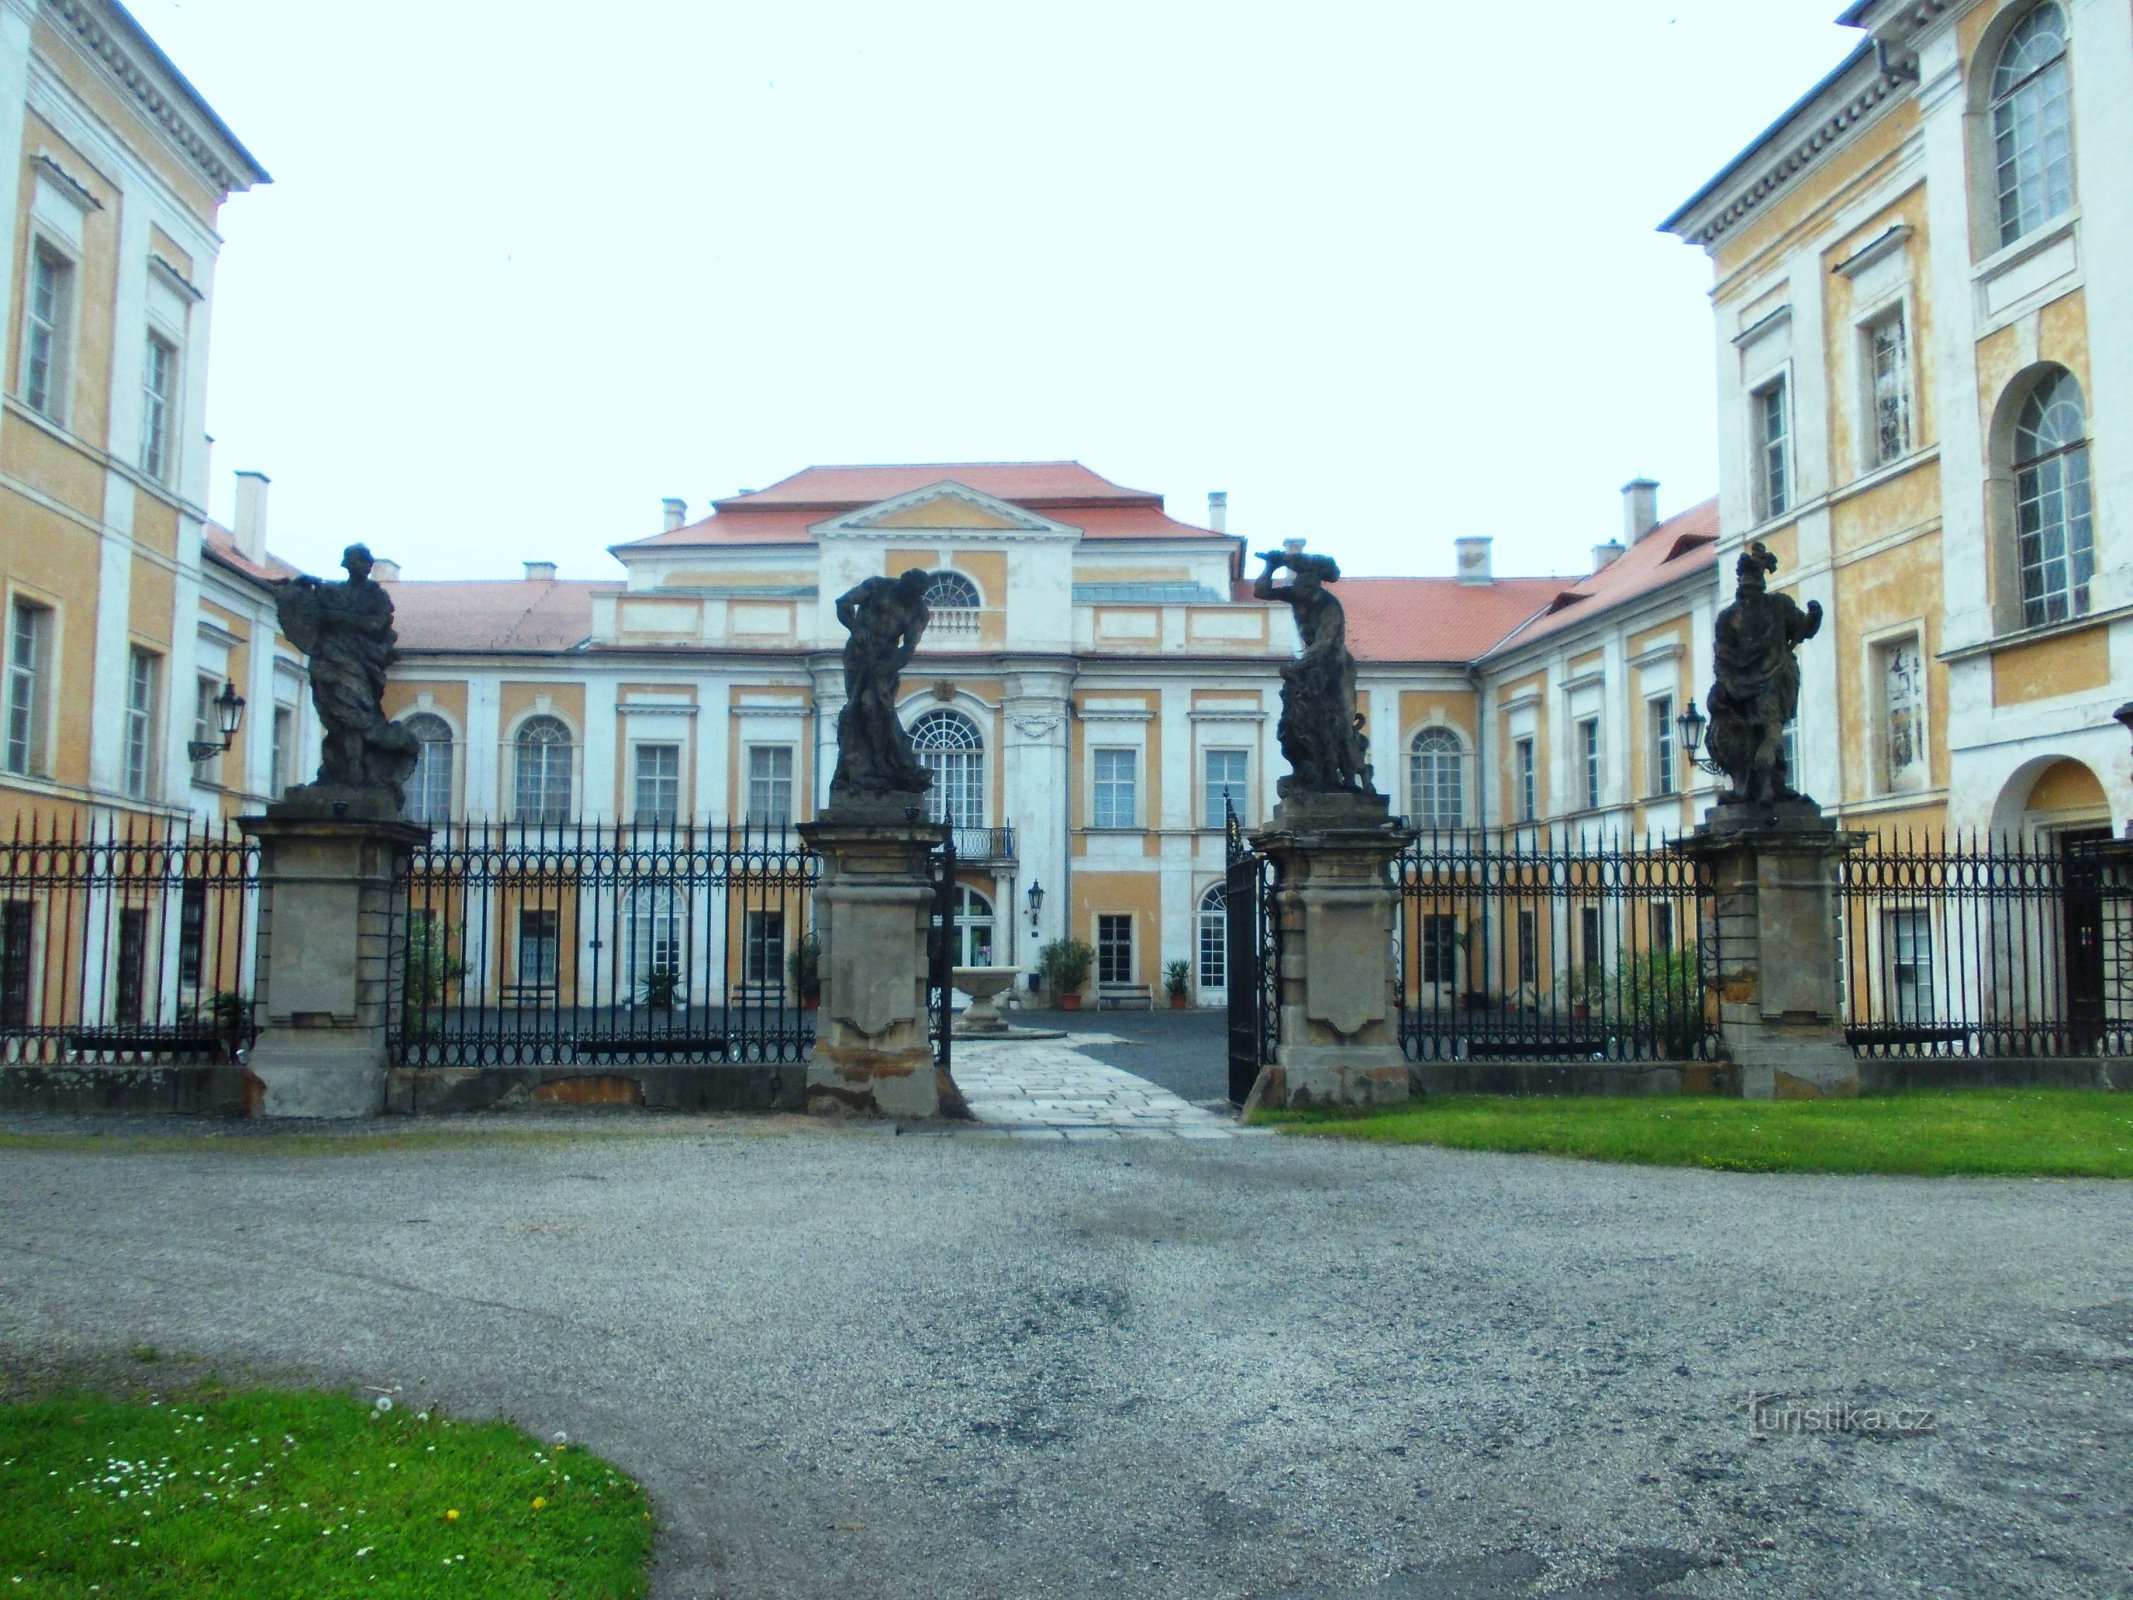 ingresso al castello con 4 statue di Minerva, Marte e due volte Ercole del maestro Braun